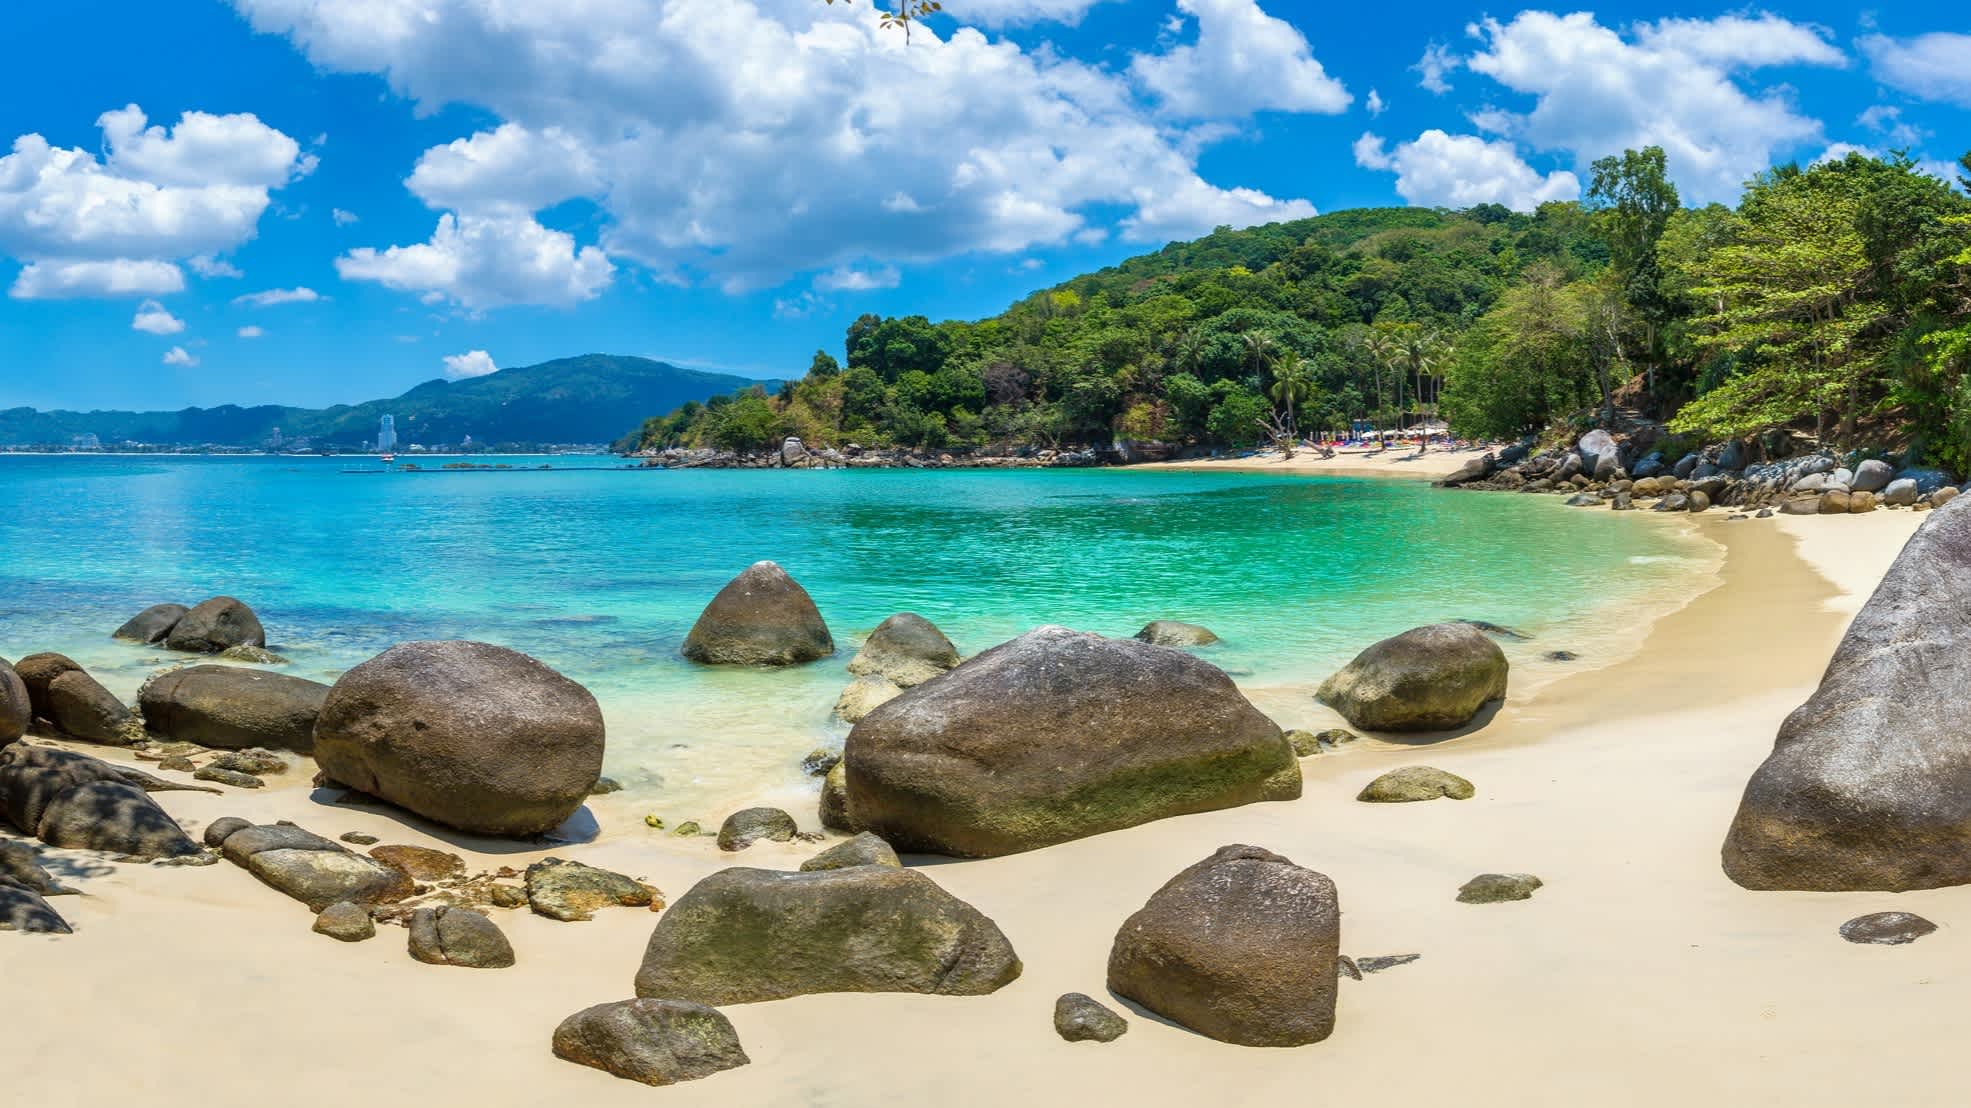 Die Paradise Beach Bucht auf Phuket mit Felsen, türkisblauem Wasser und grünen Hügeln.